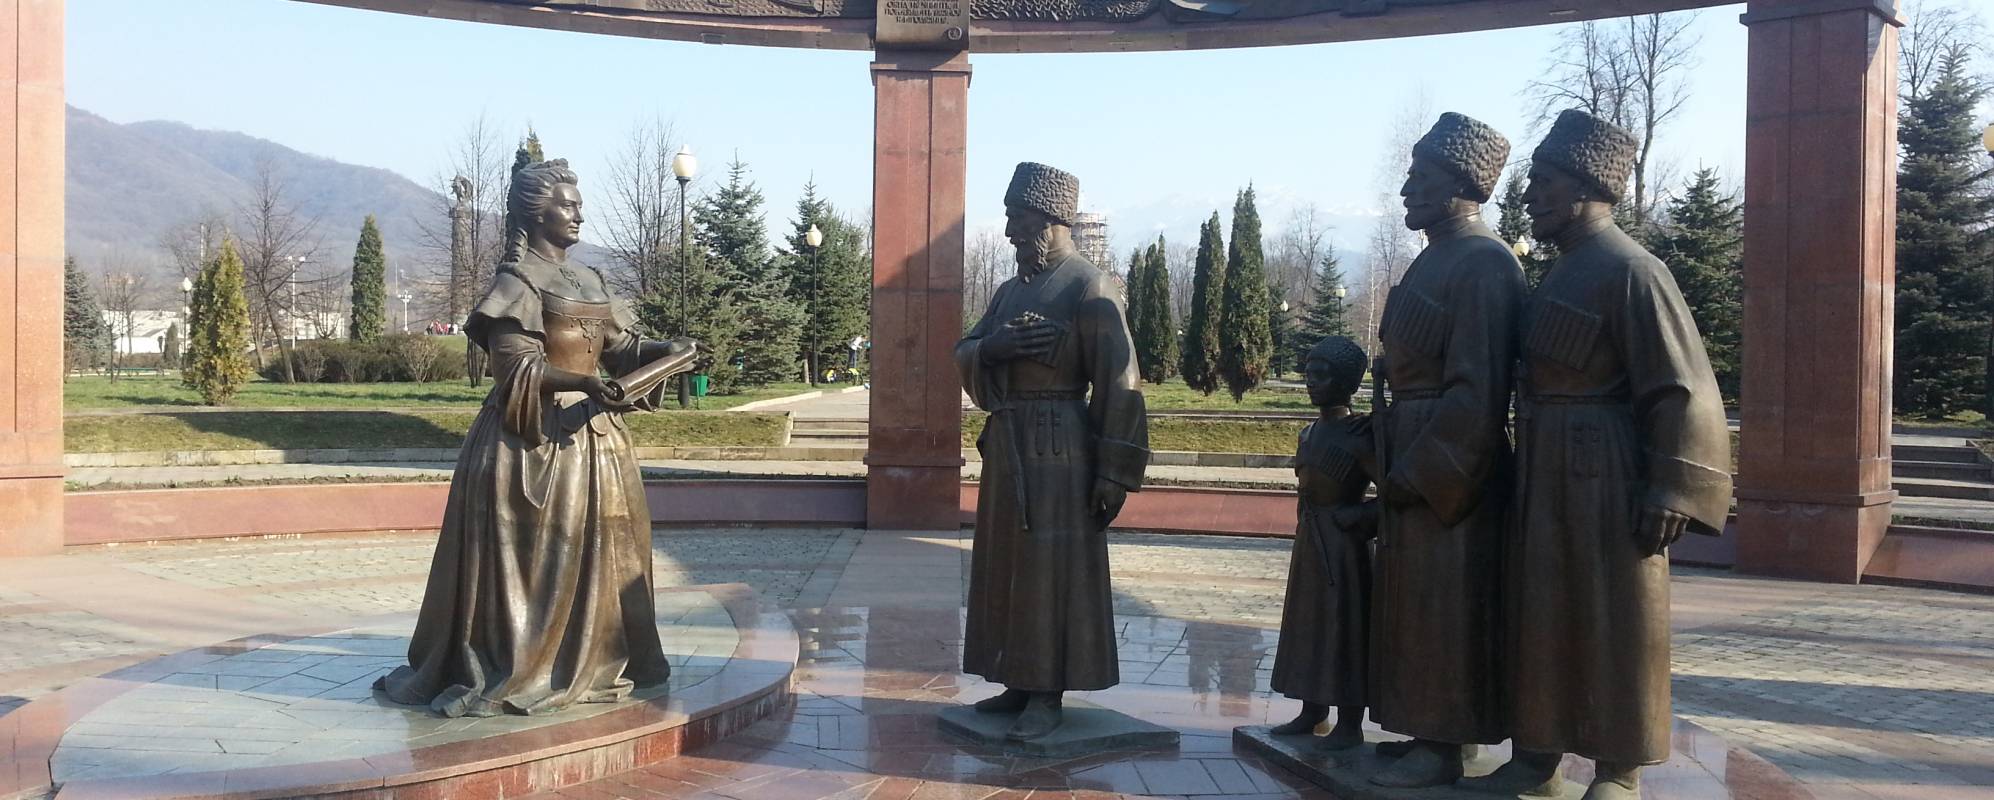 Площадь дружбы народов Владикавказ